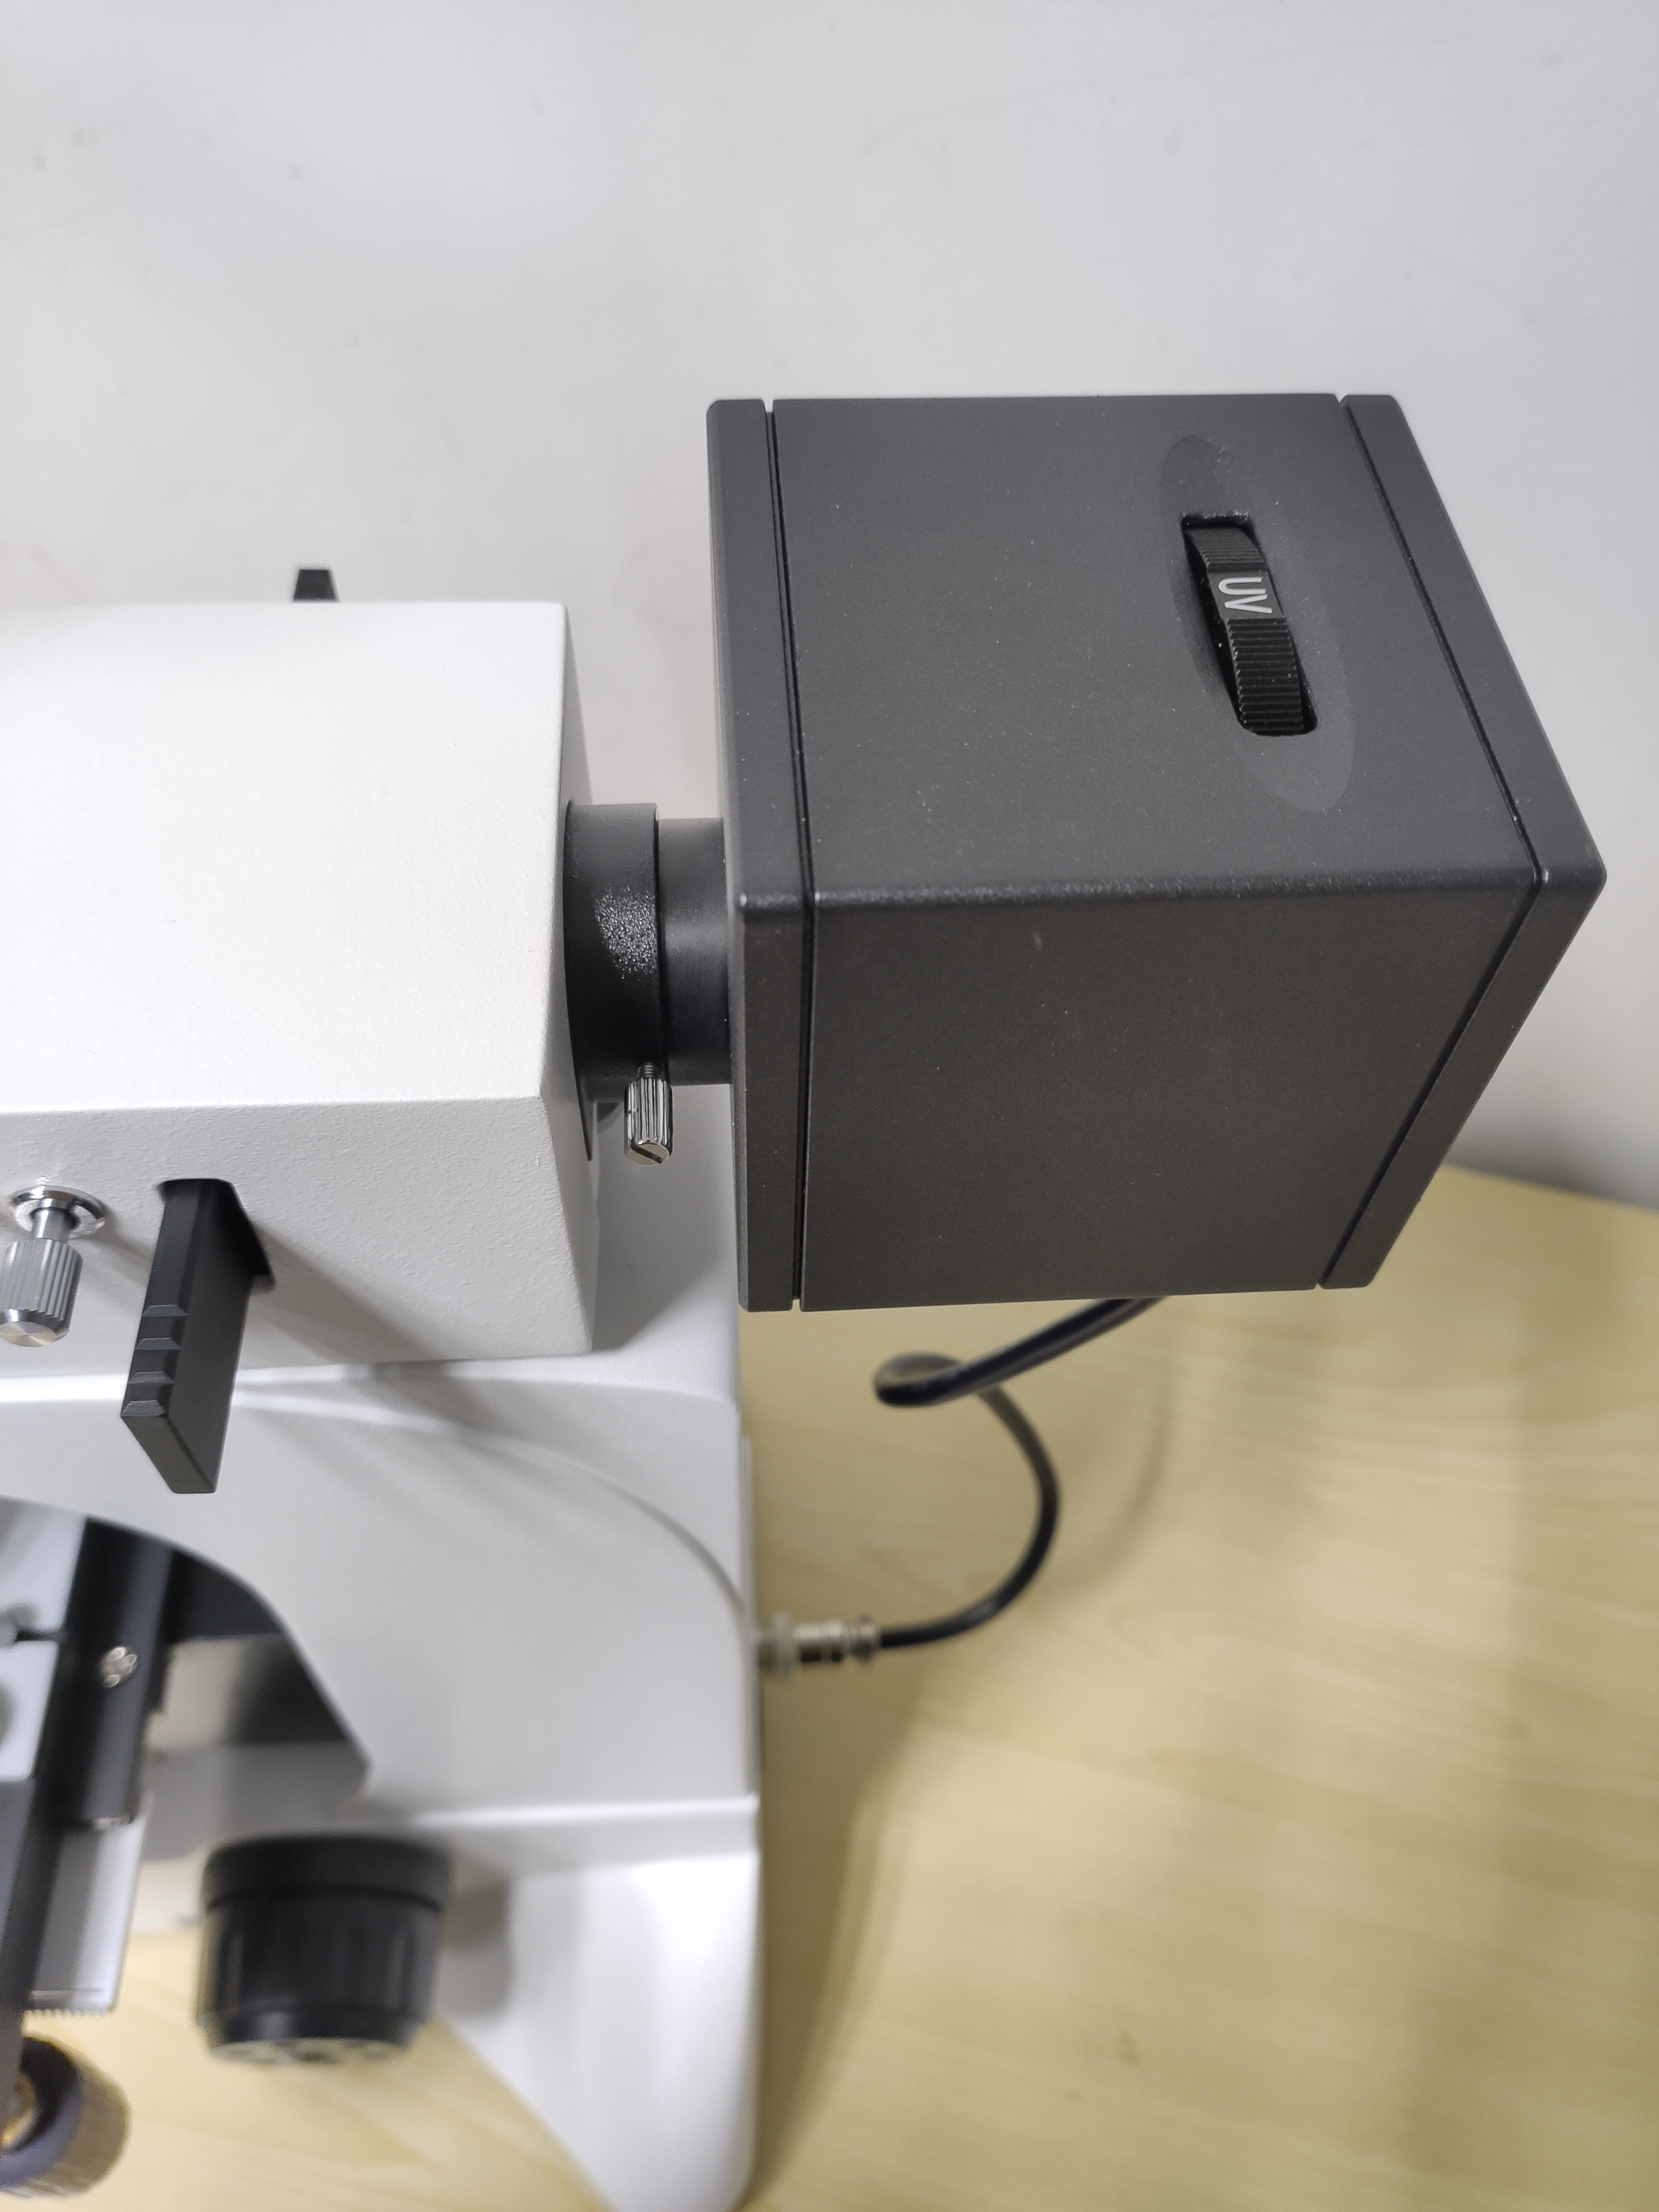 正置荧光显微镜LED荧光激发显微分析系统DFM-66C